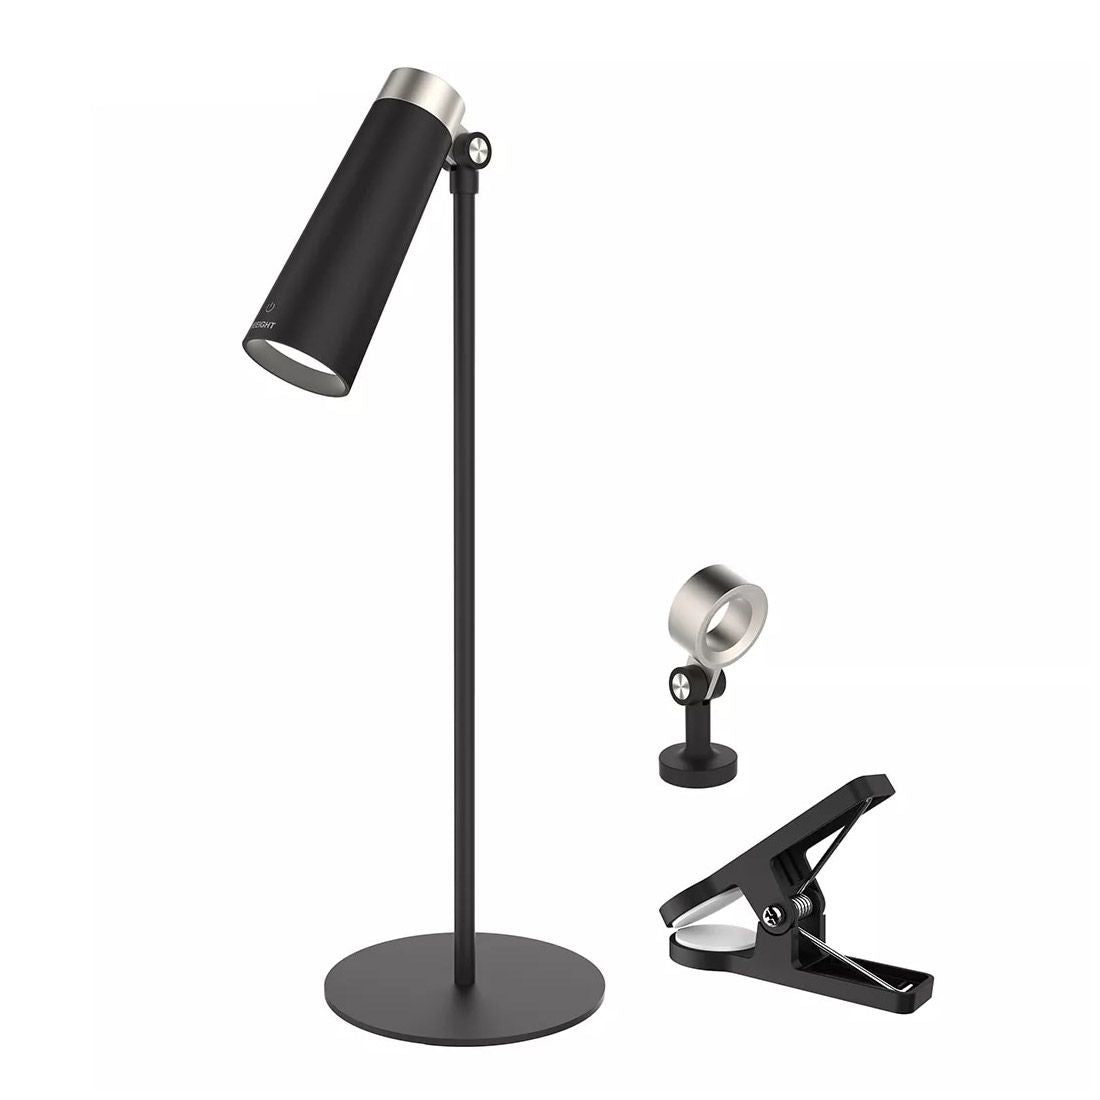 Yeelight 4-in-1 Rechargeable Desk Lamp - Black - إضاءة - Store 974 | ستور ٩٧٤